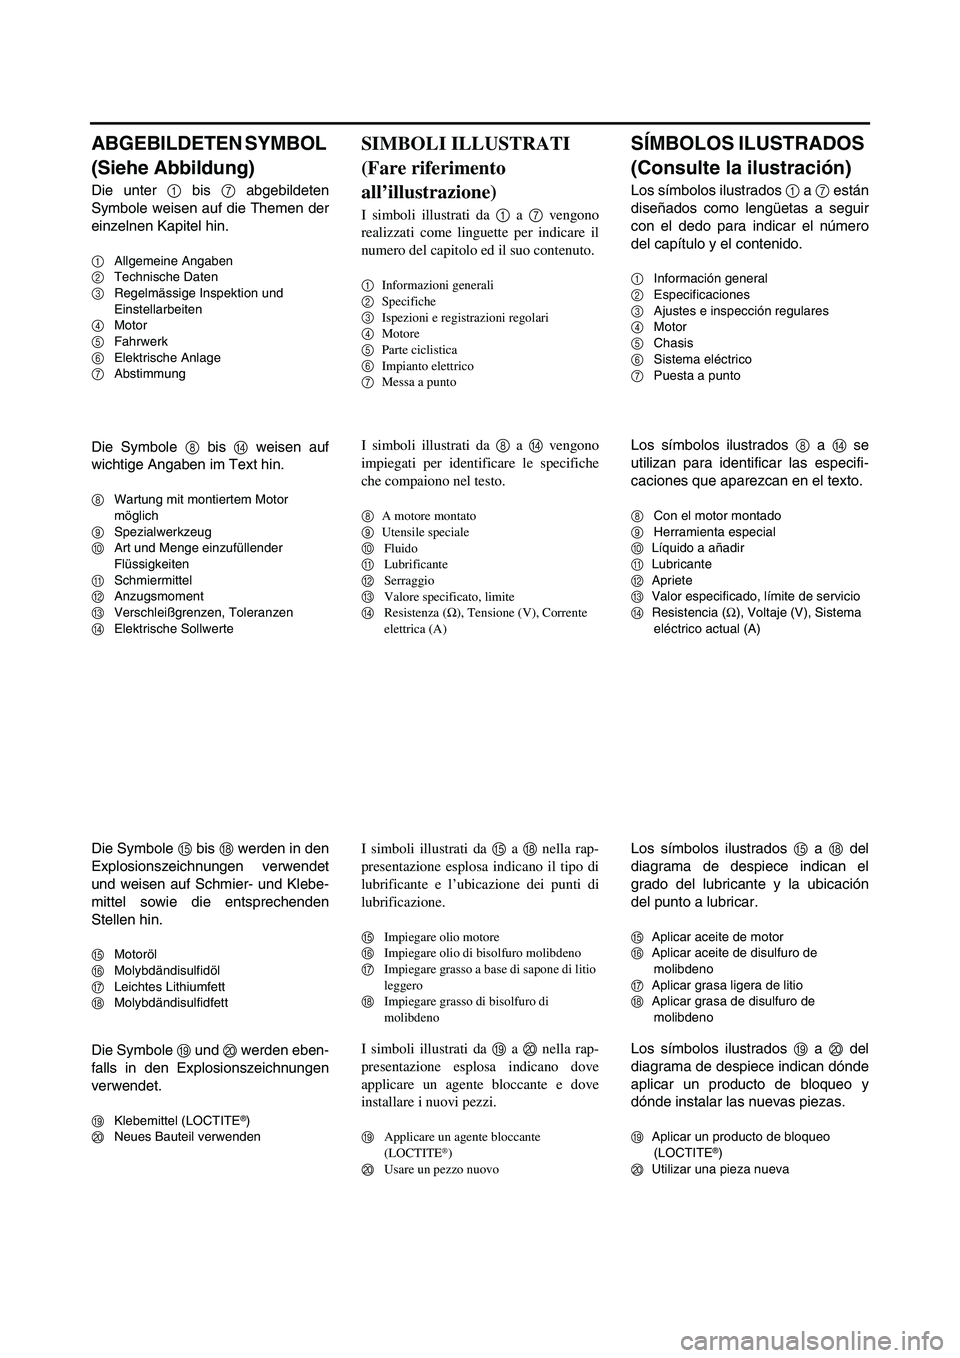 YAMAHA WR 250F 2004  Betriebsanleitungen (in German) ABGEBILDETEN SYMBOL 
(Siehe Abbildung)
Die unter 1 bis 7 abgebildeten
Symbole weisen auf die Themen der
einzelnen Kapitel hin.
1Allgemeine Angaben
2Technische Daten
3Regelmässige Inspektion und 
Eins